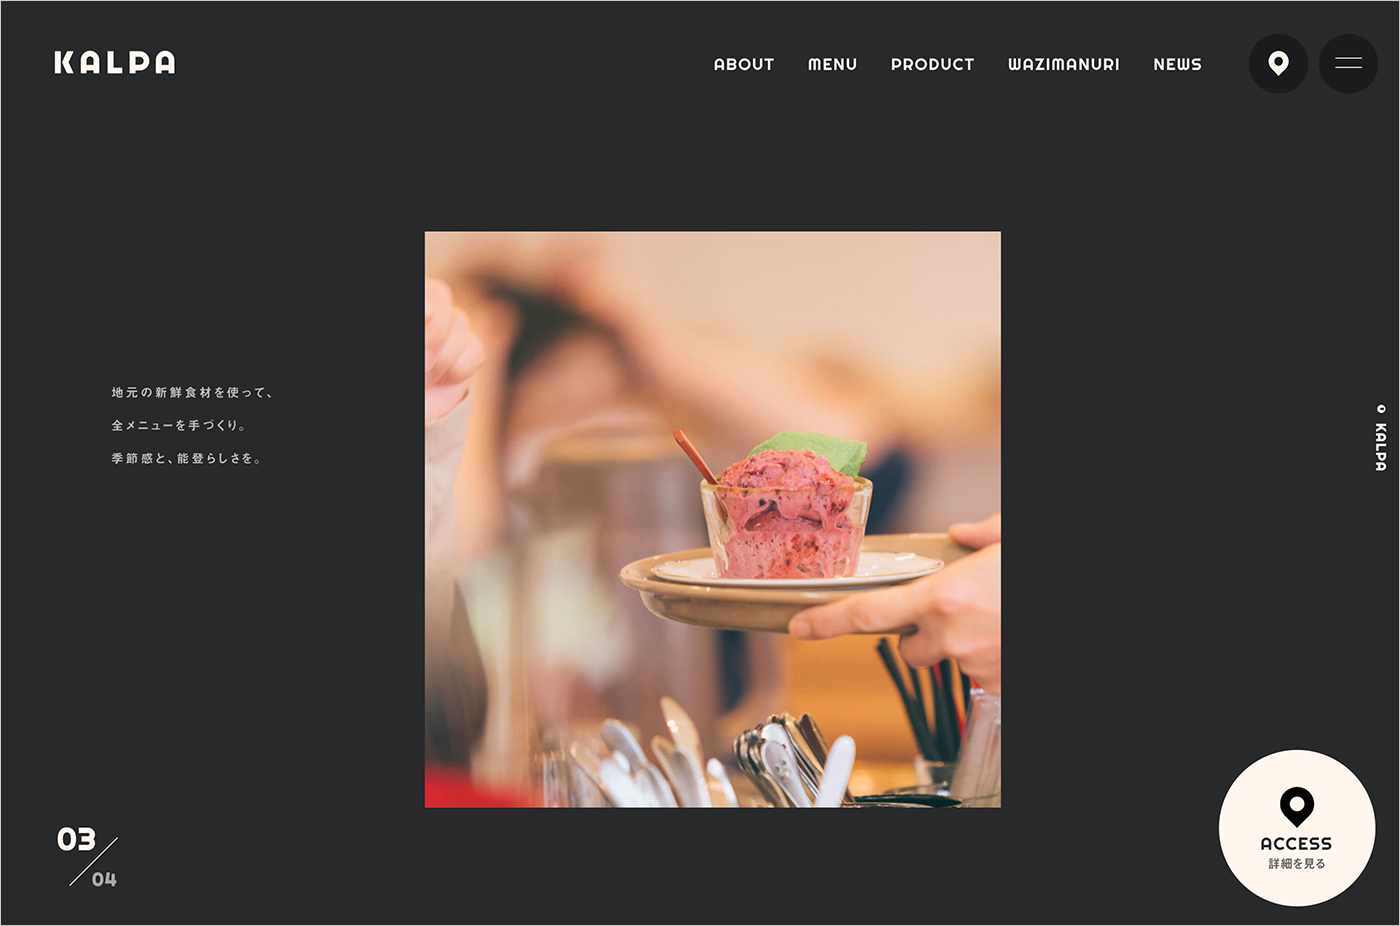 輪島・朝市のカフェ「KALPA」 | こだわりのオリジナルコーヒーとスイーツウェブサイトの画面キャプチャ画像